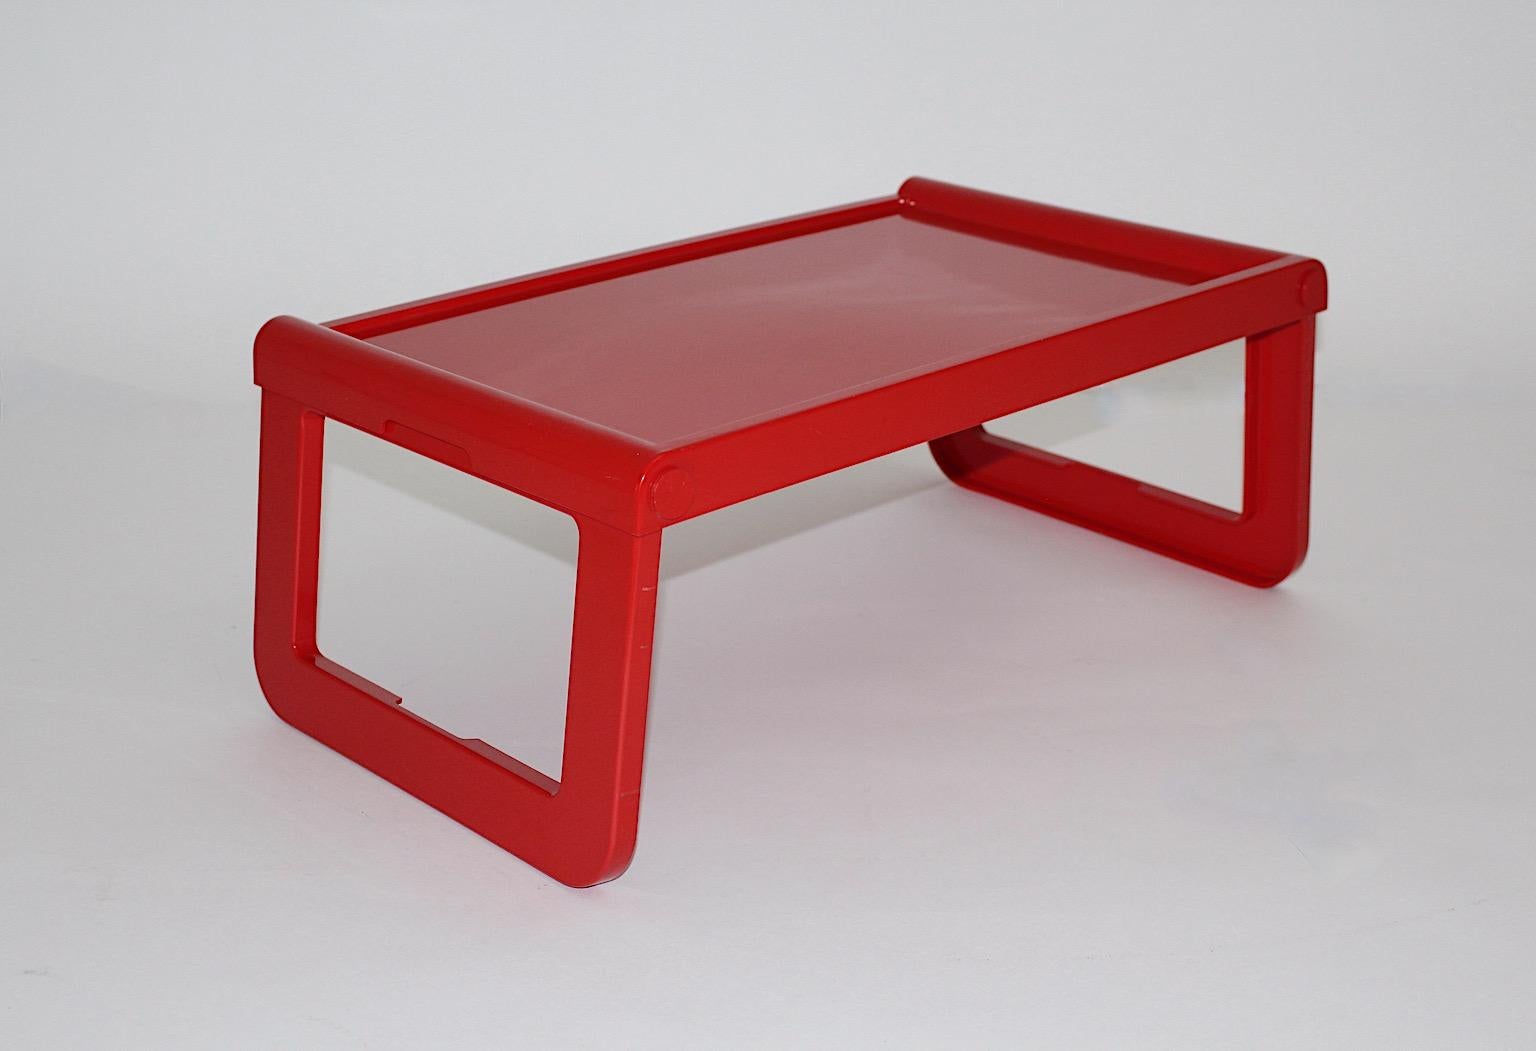 Space Age rot Vintage Tablett oder Frühstückstisch Modell pepito aus Kunststoff von Luigi Massoni Grafico Studio Zeto für Guzzini 1970er Jahre Italien entworfen.
Perfekt als faltbarer Frühstückstisch oder Tablett oder als Computertisch zu